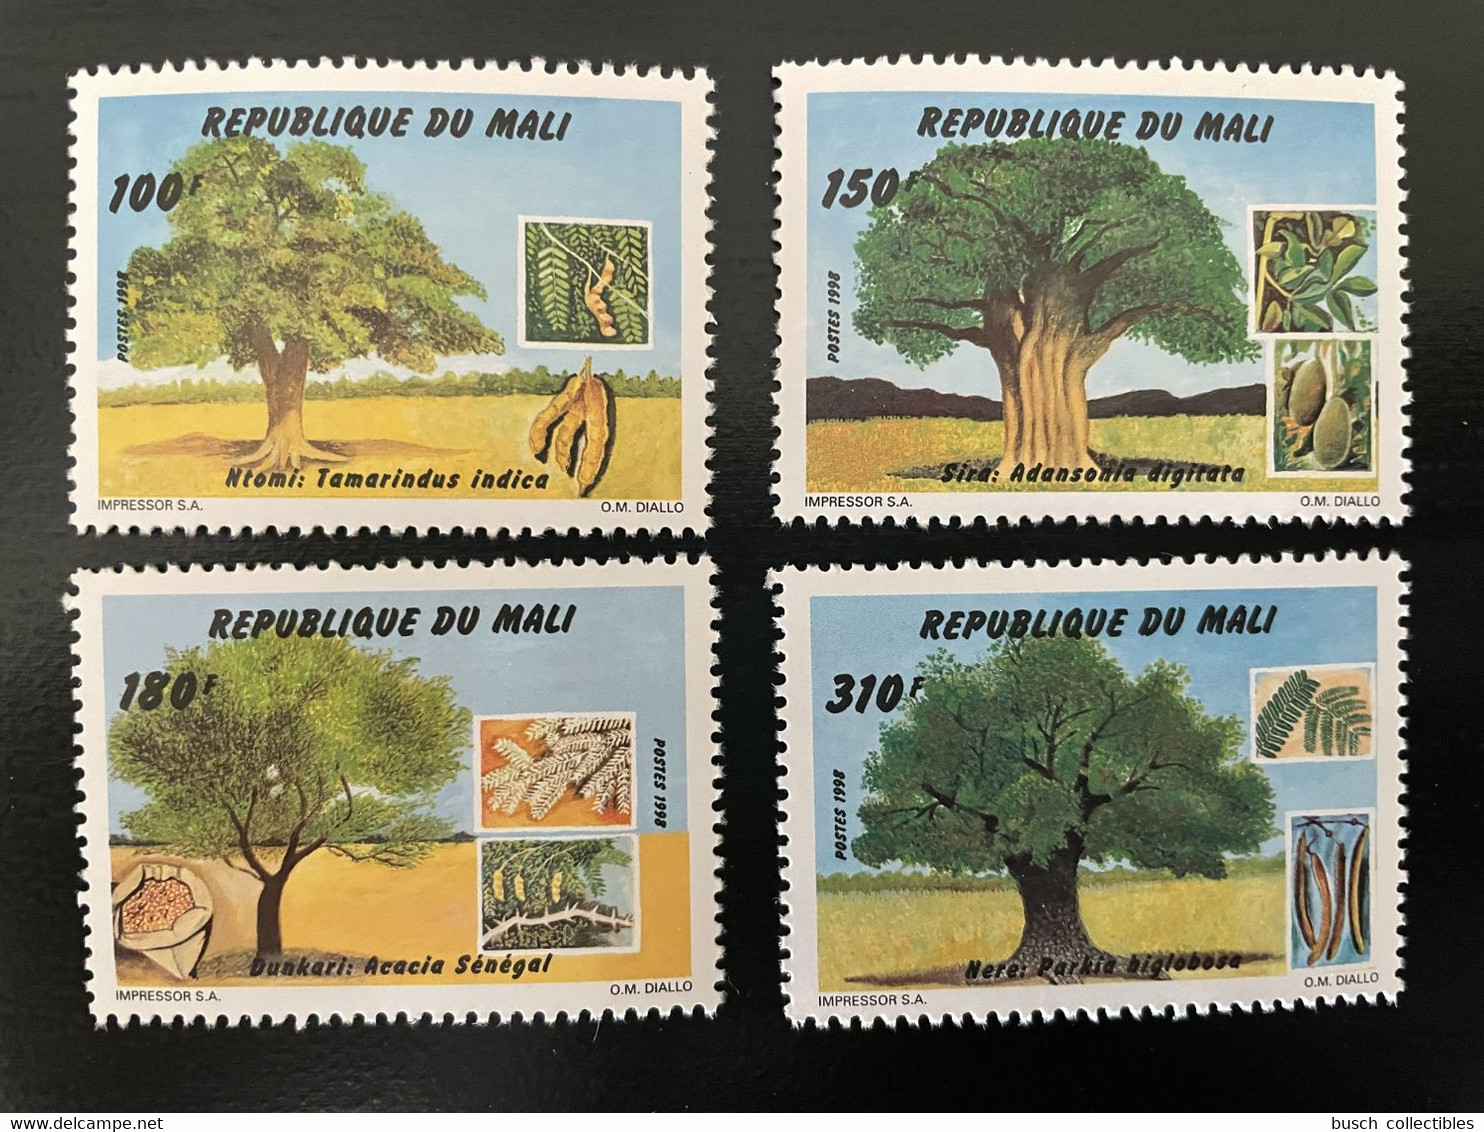 Mali 1998 Mi. 2063 - 2066 Arbres Trees Bäume 4 Val. MNH** - Mali (1959-...)